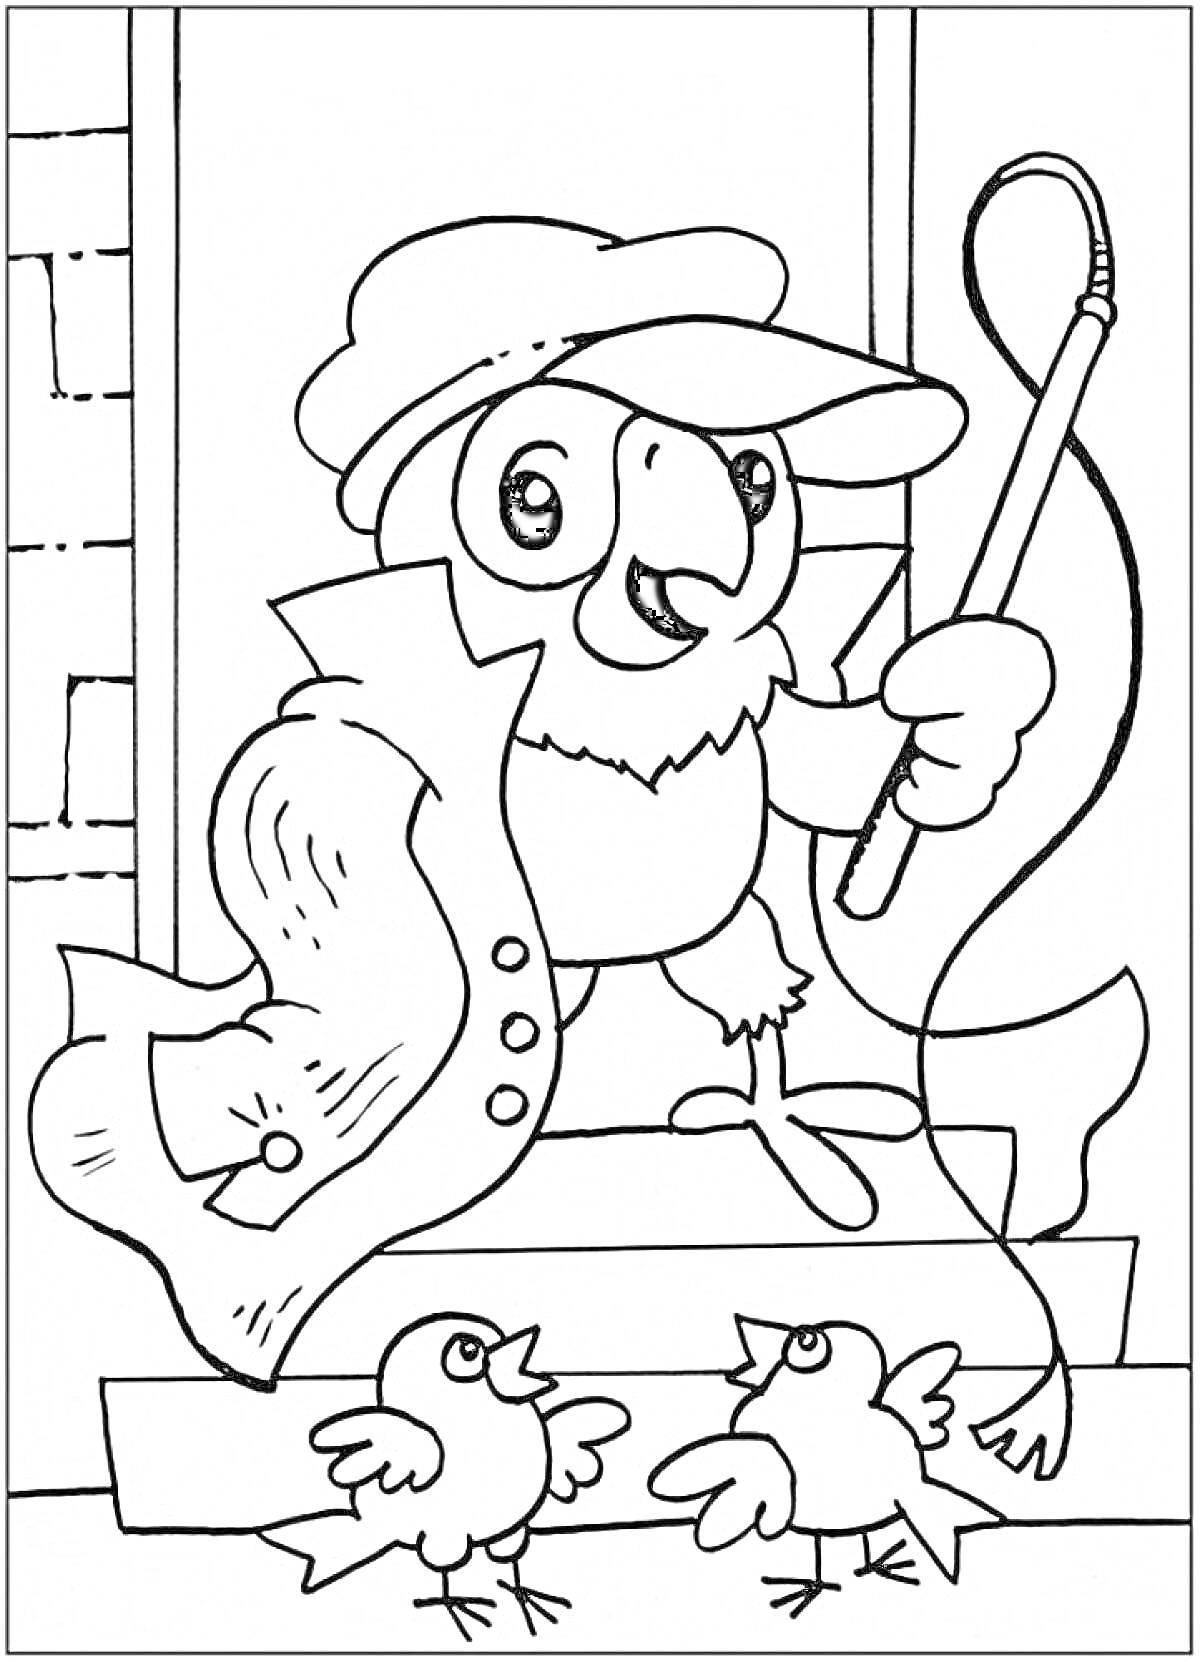 Раскраска Попугай Кеша в шляпе и накидке с тростью, на фоне домика, с двумя птичками